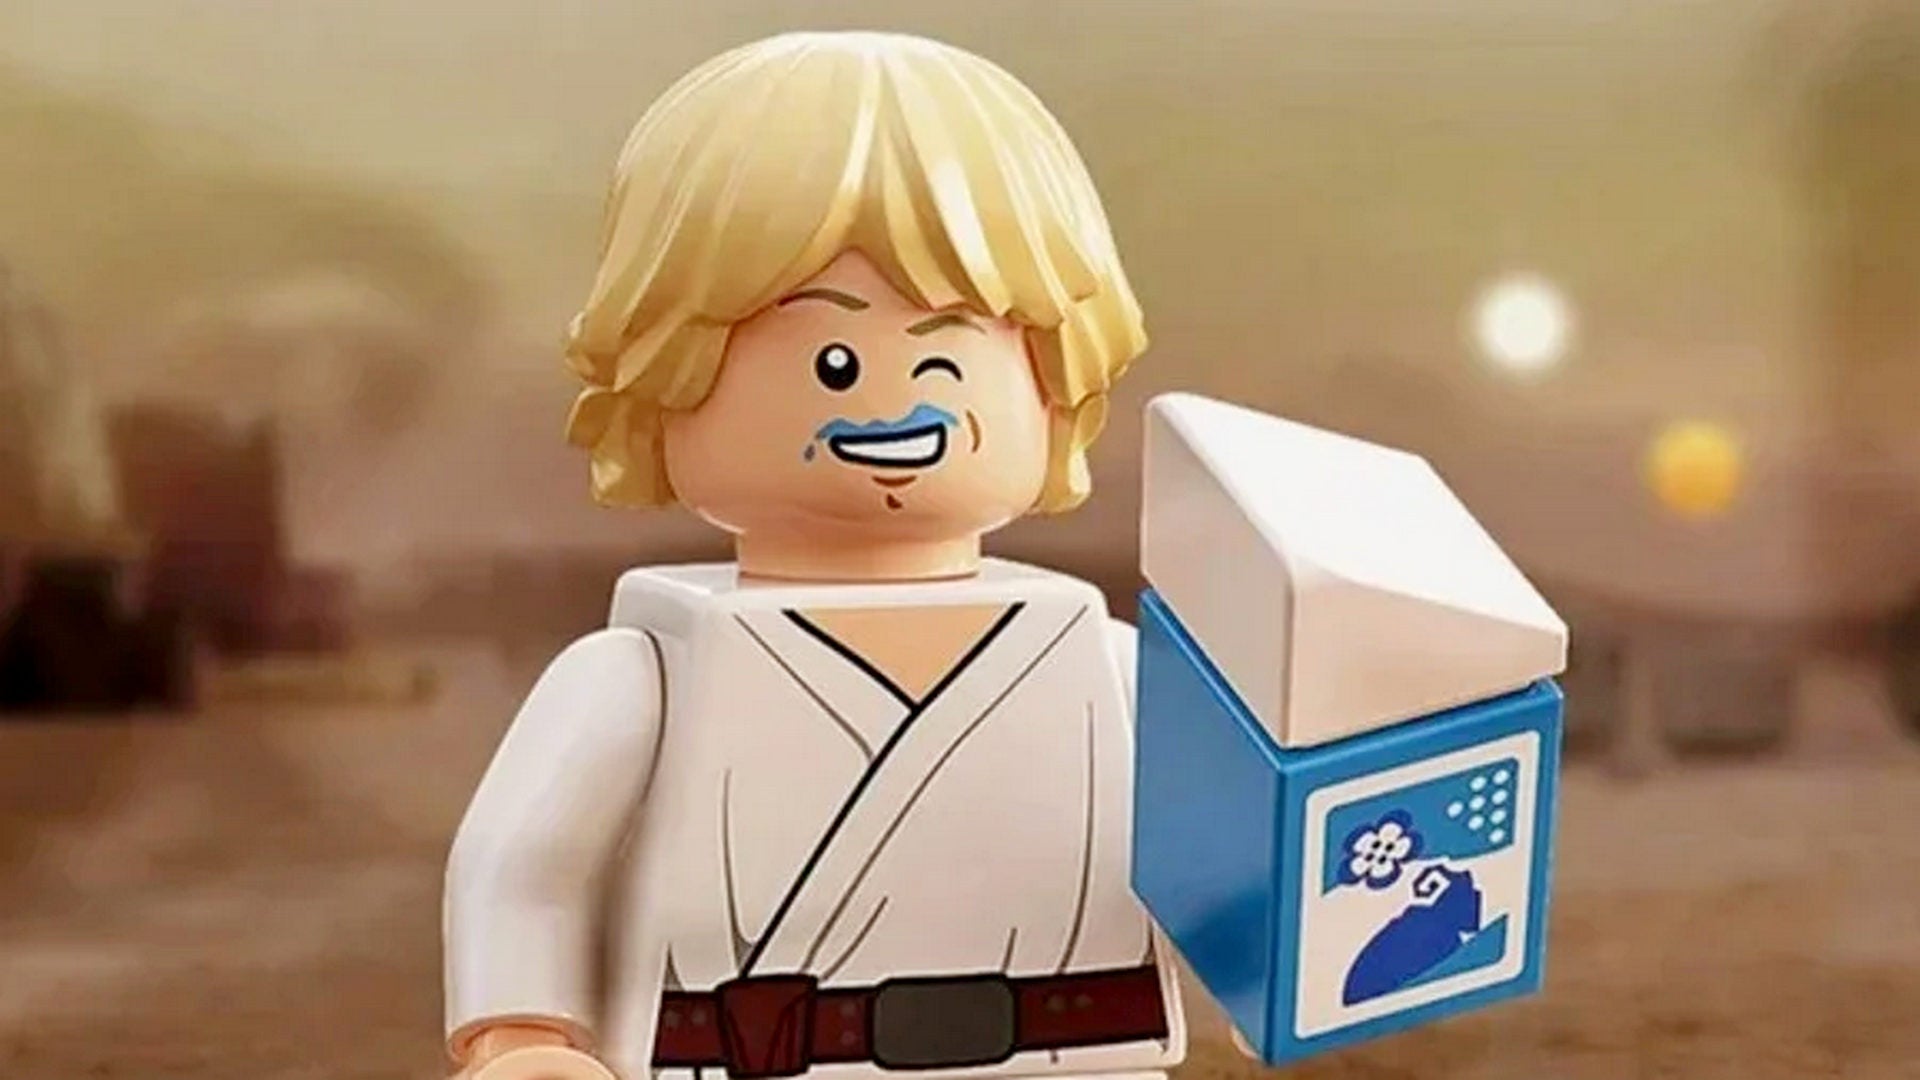 Bilder zu Scalper haben ein Auge auf die Luke-Minifigur aus Lego Star Wars geworfen